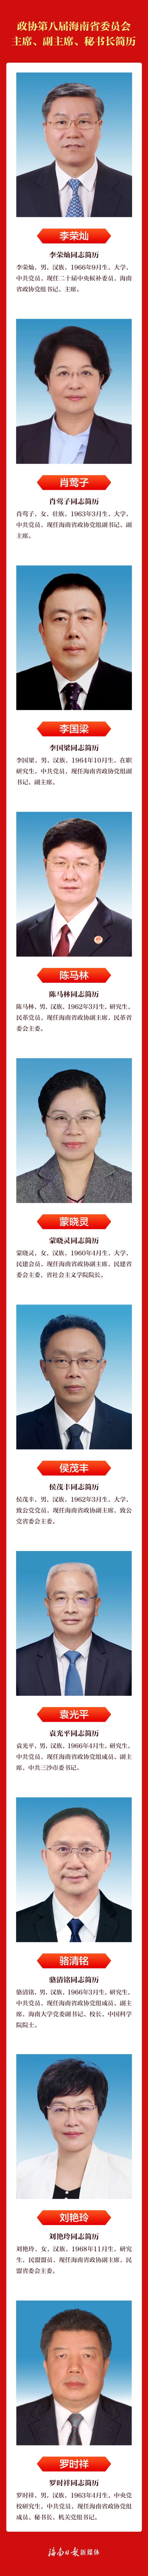 政协第八届海南省委员会主席、副主席、秘书长简历